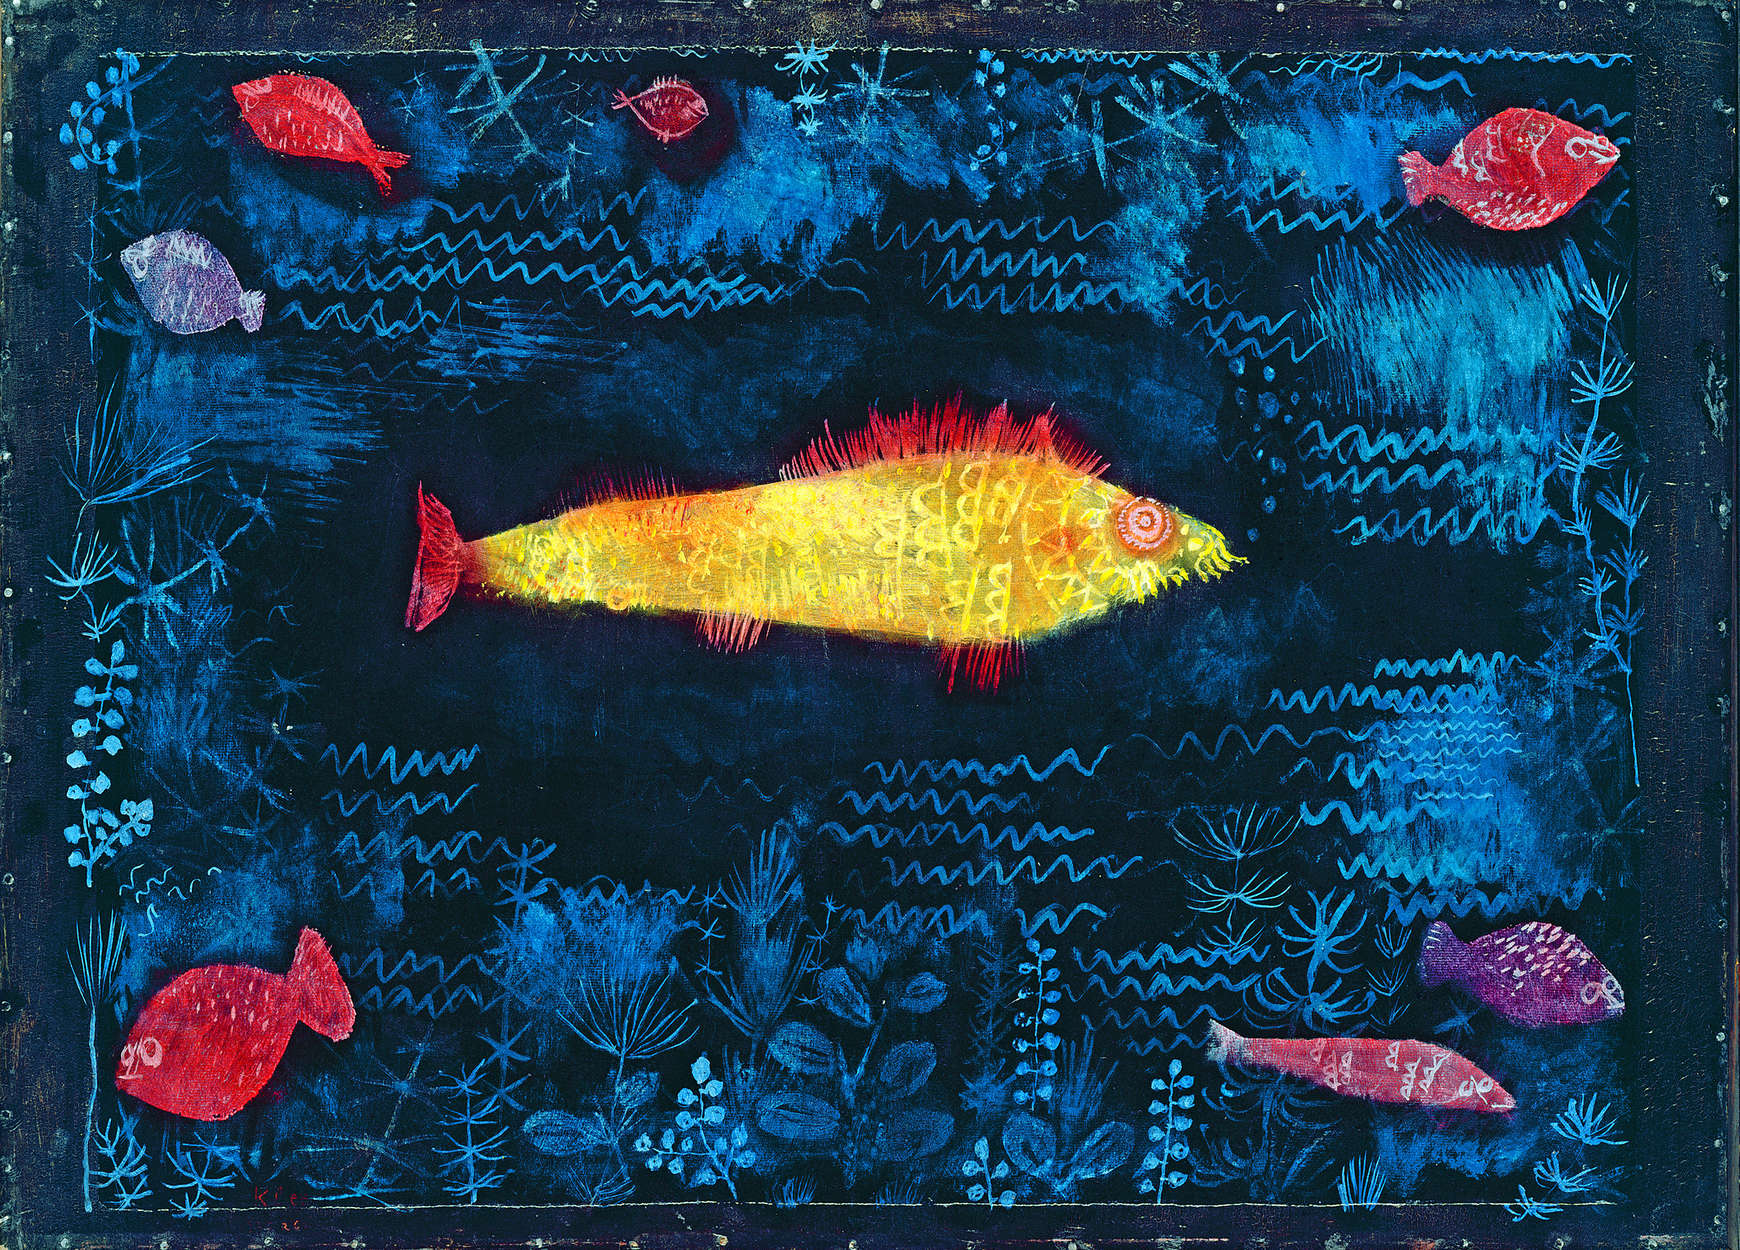             Fototapete "Der Goldfisch" von Paul Klee
        